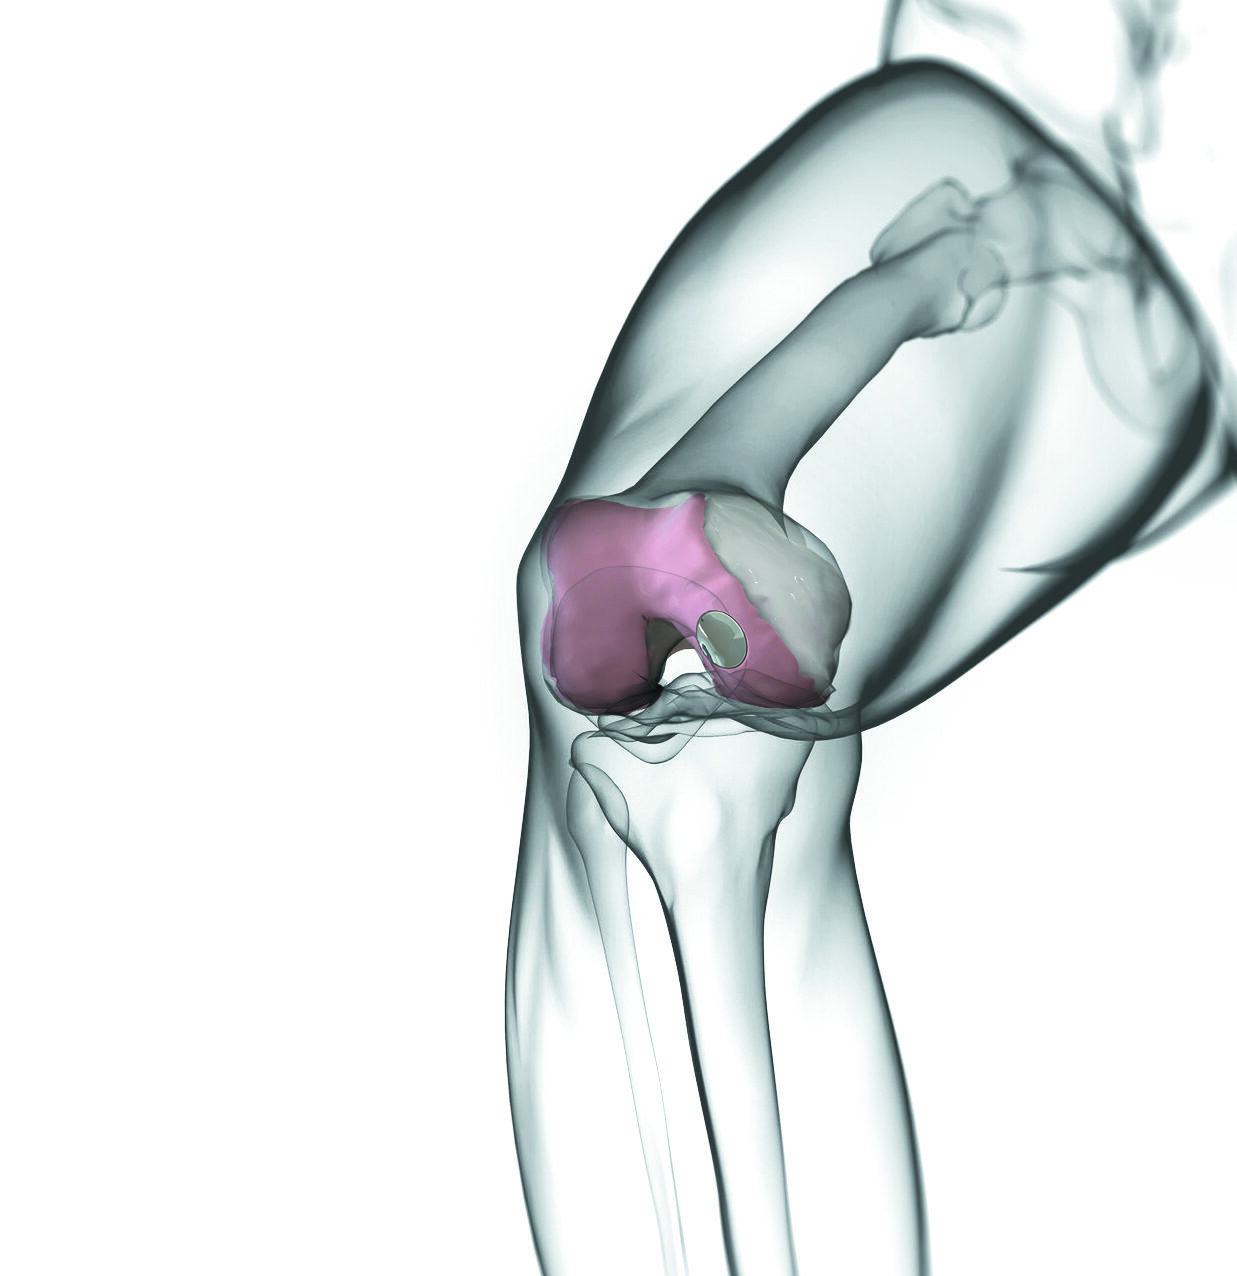 Knee implant – Episurf